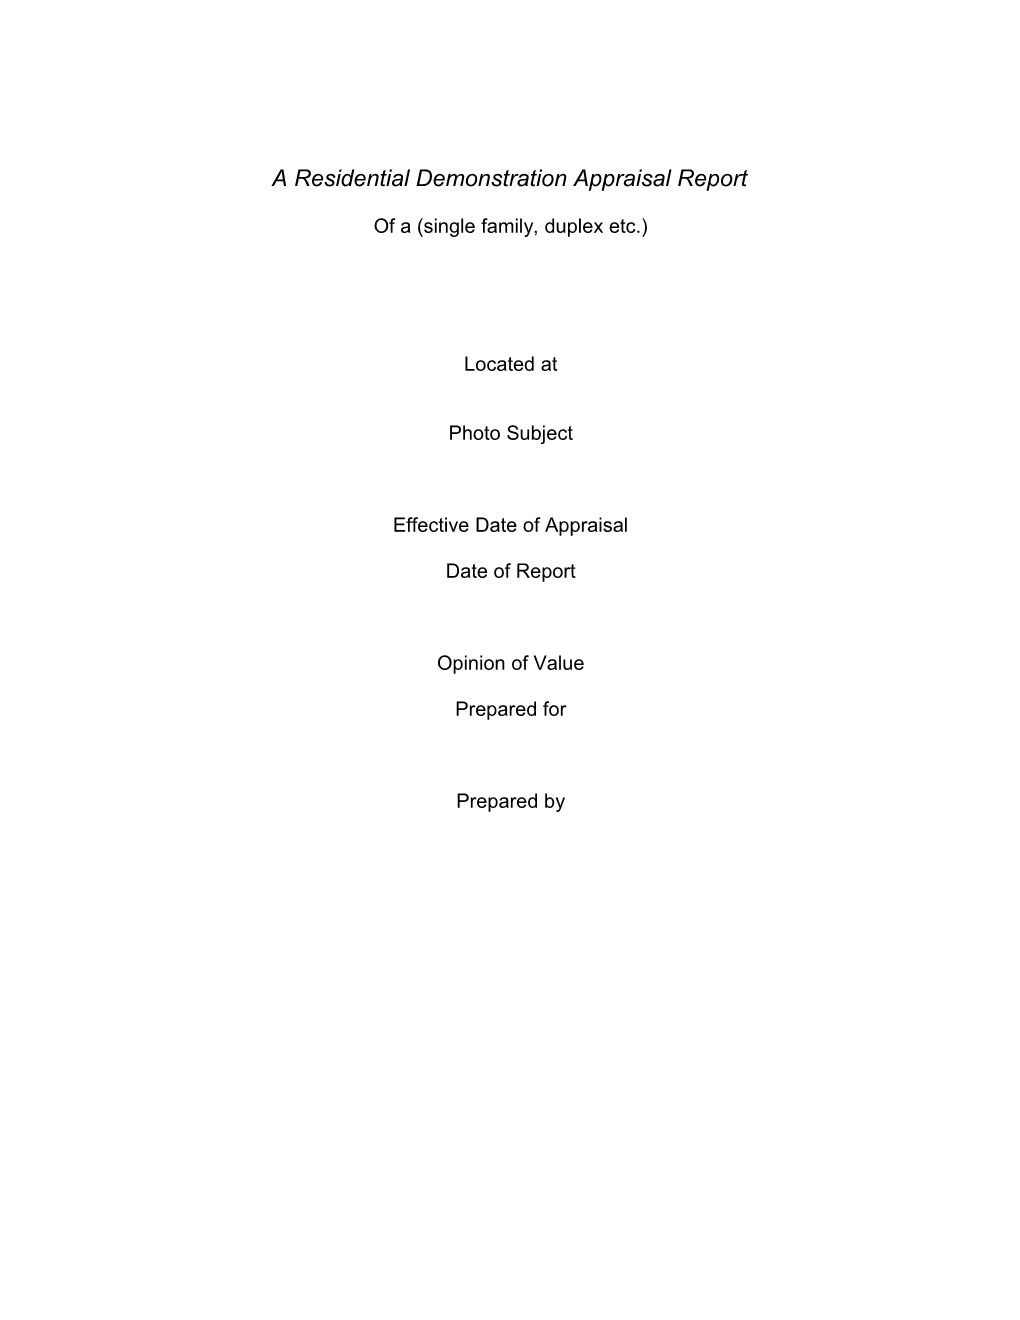 A Demonstration Appraisal Report